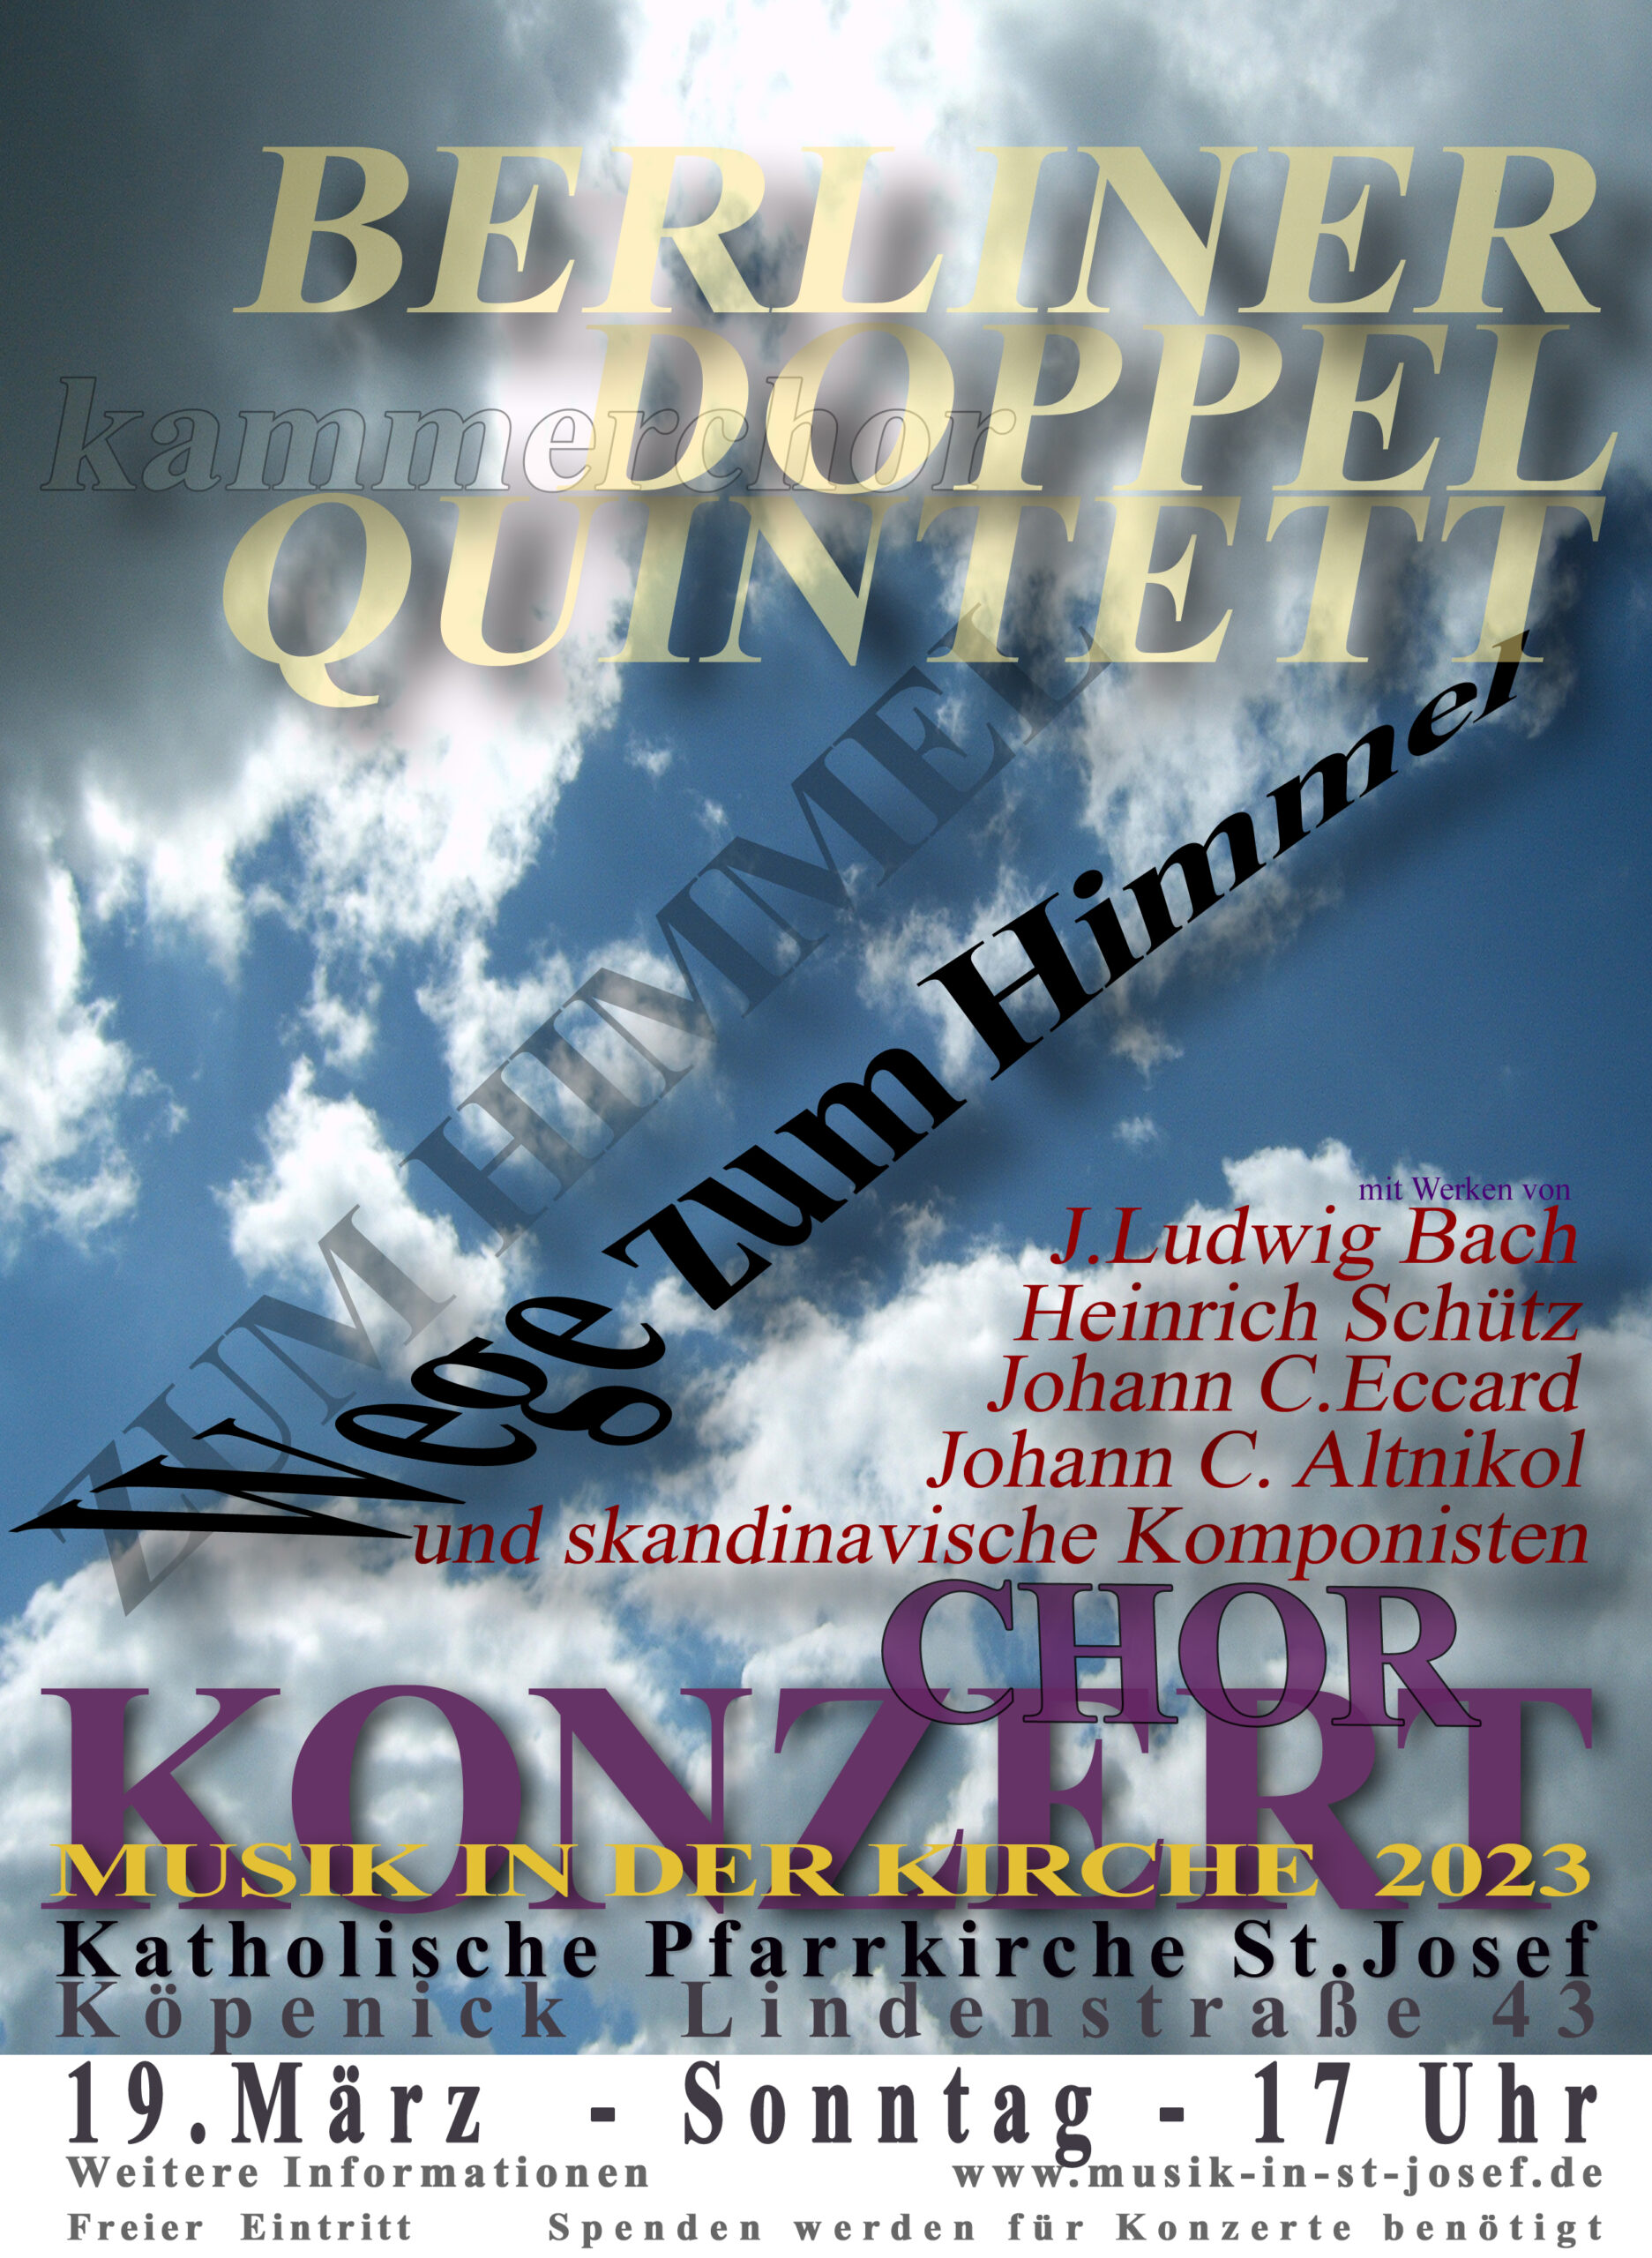 Musik in der Kirche | Berliner Doppelquintett | 19.3. 17 Uhr in St. Josef